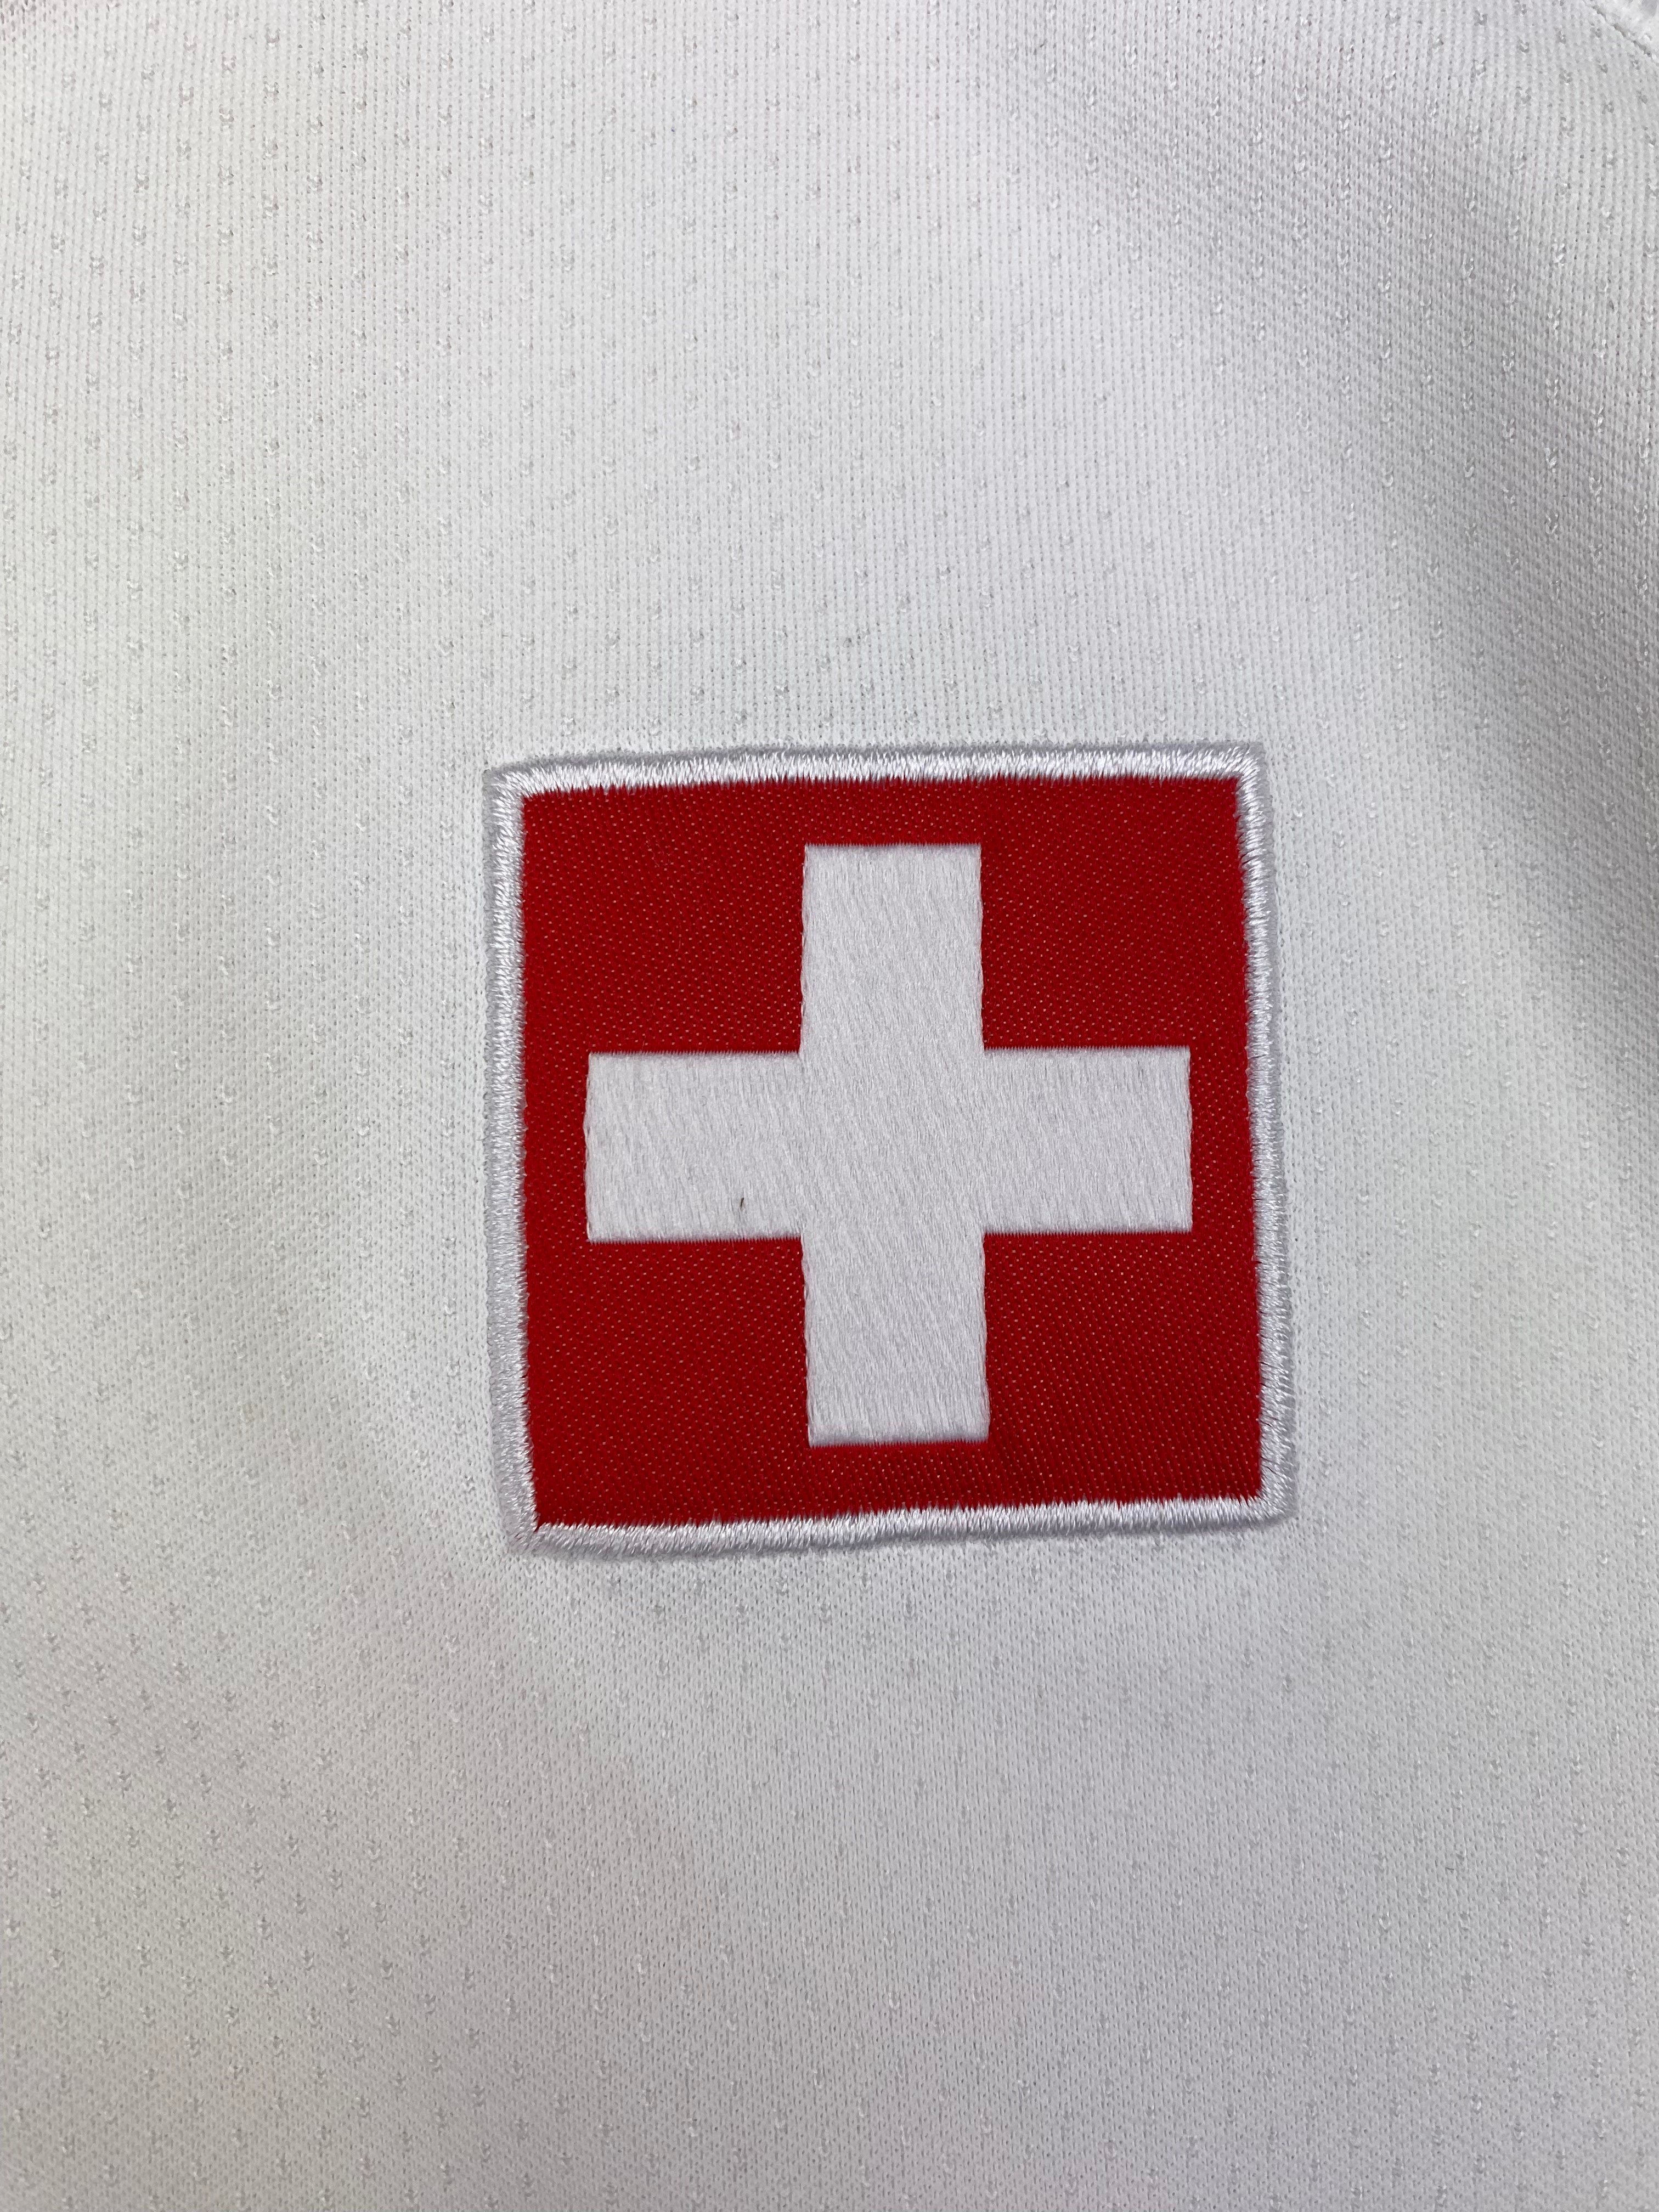 2018/19 Switzerland Away Shirt (M) 9/10